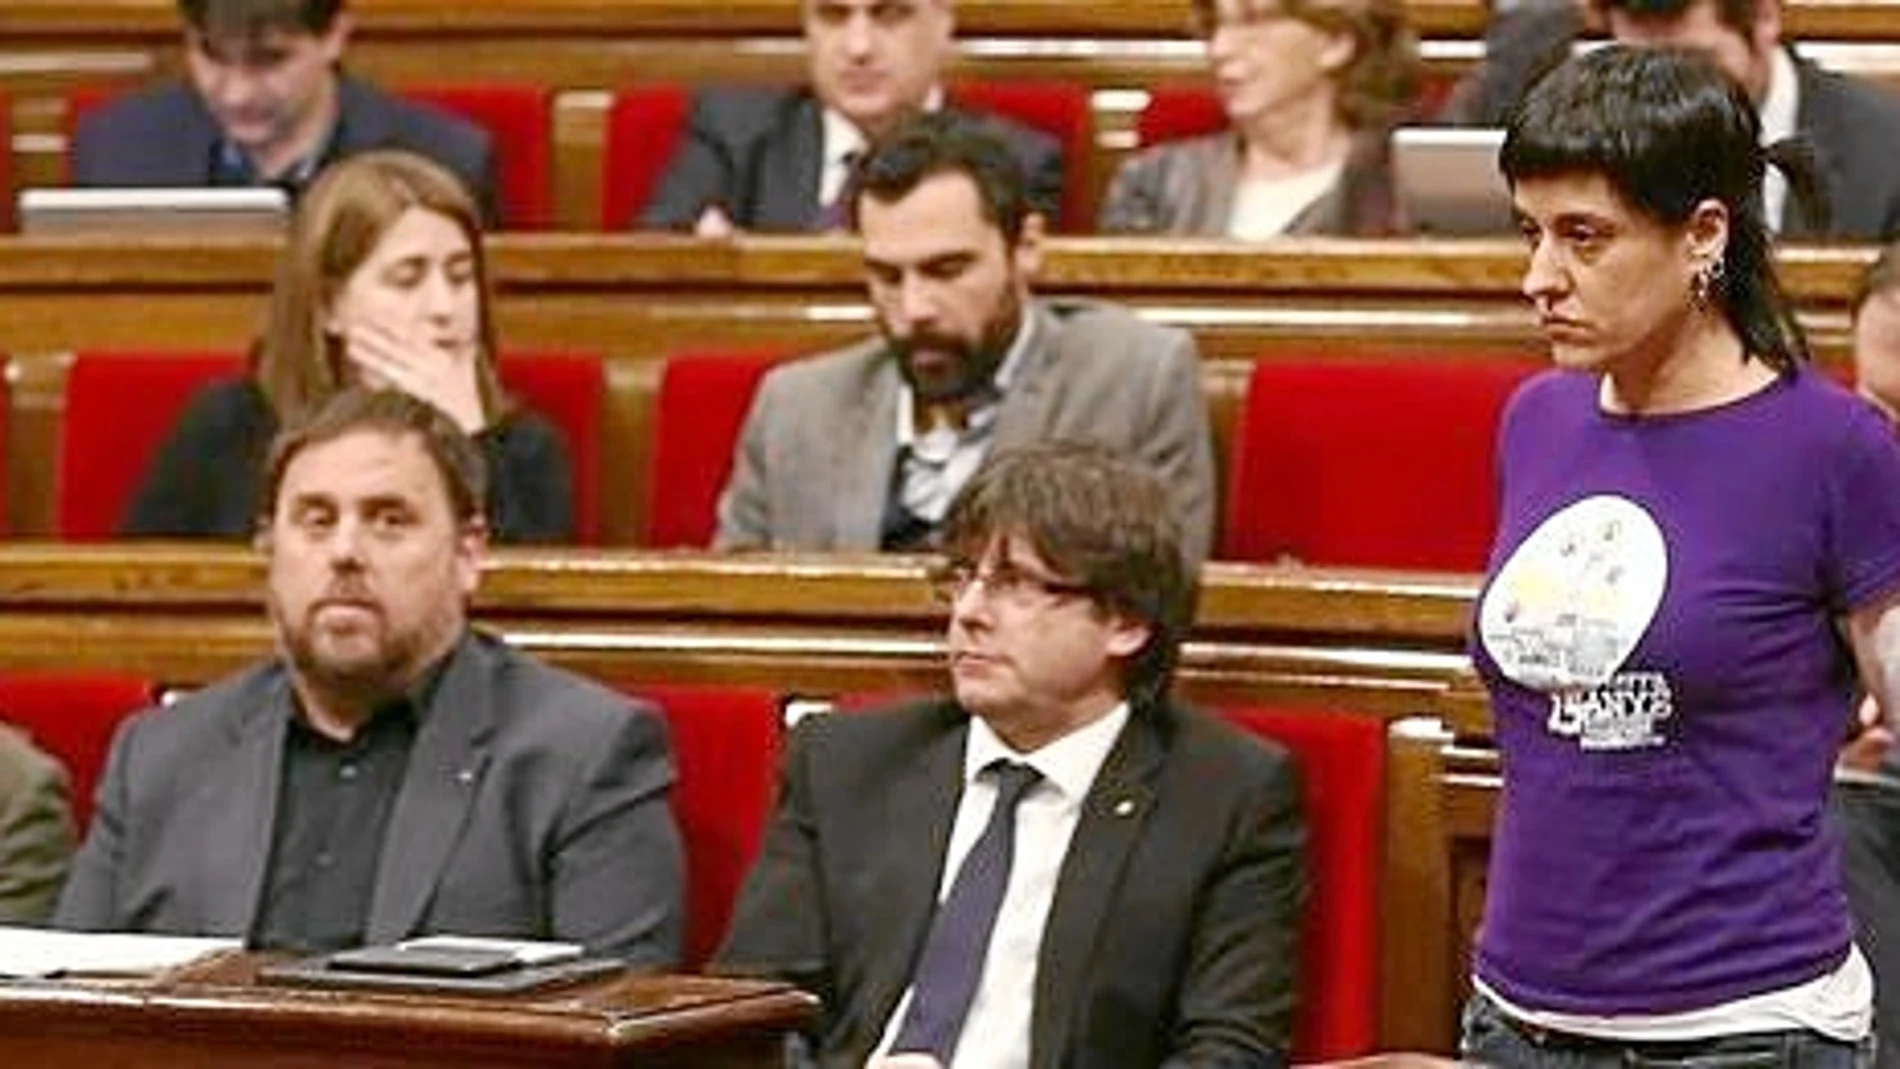 La CUP se alineó con los reproches de Jordi Évole, que irritaron a algunos miembros del Govern